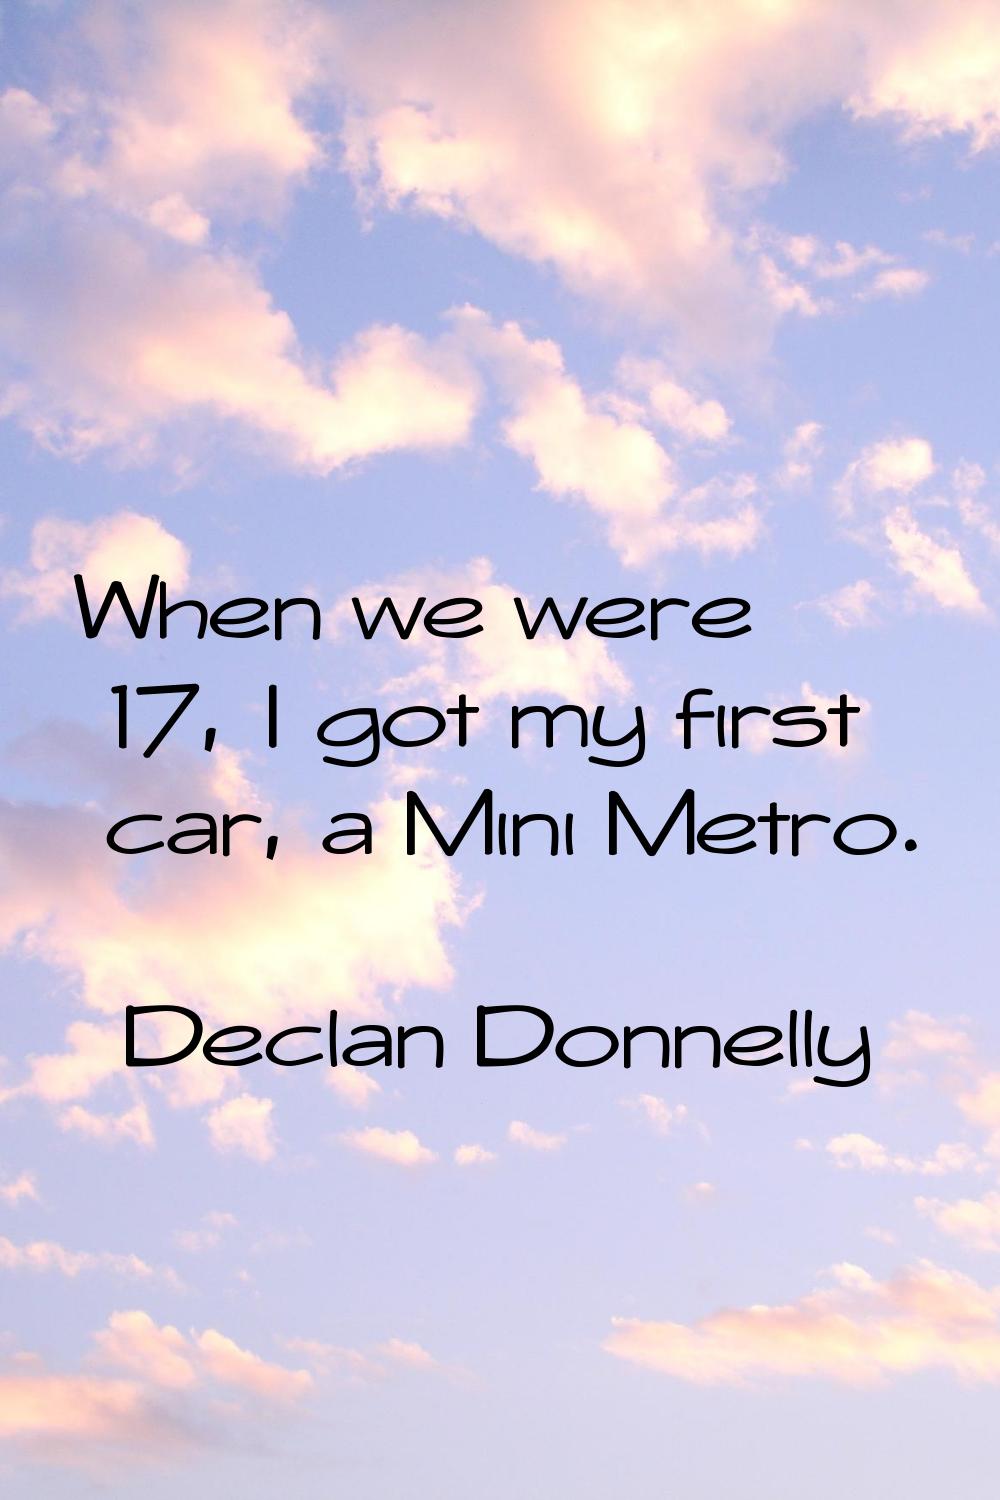 When we were 17, I got my first car, a Mini Metro.